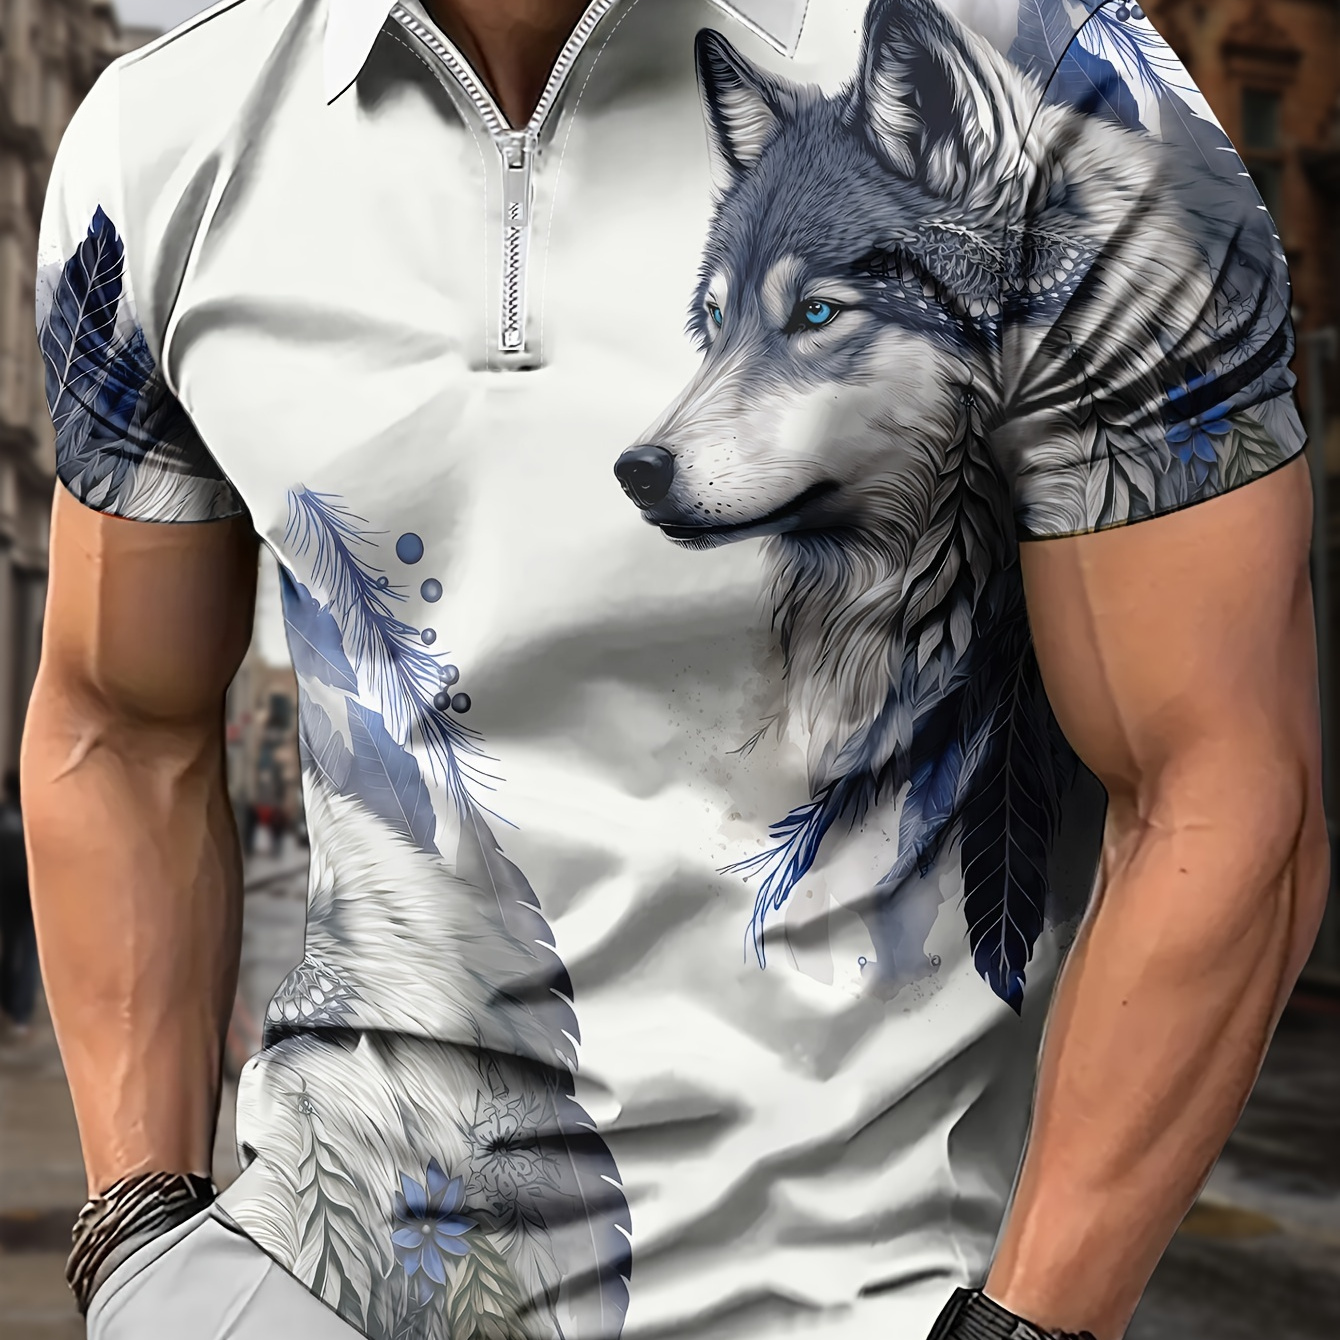 

Tribal Style Wolf Anime 3d Print Men's Novelty Short Sleeve Zipper Lapel Shirt For Summer Outdoor, Gift For Men